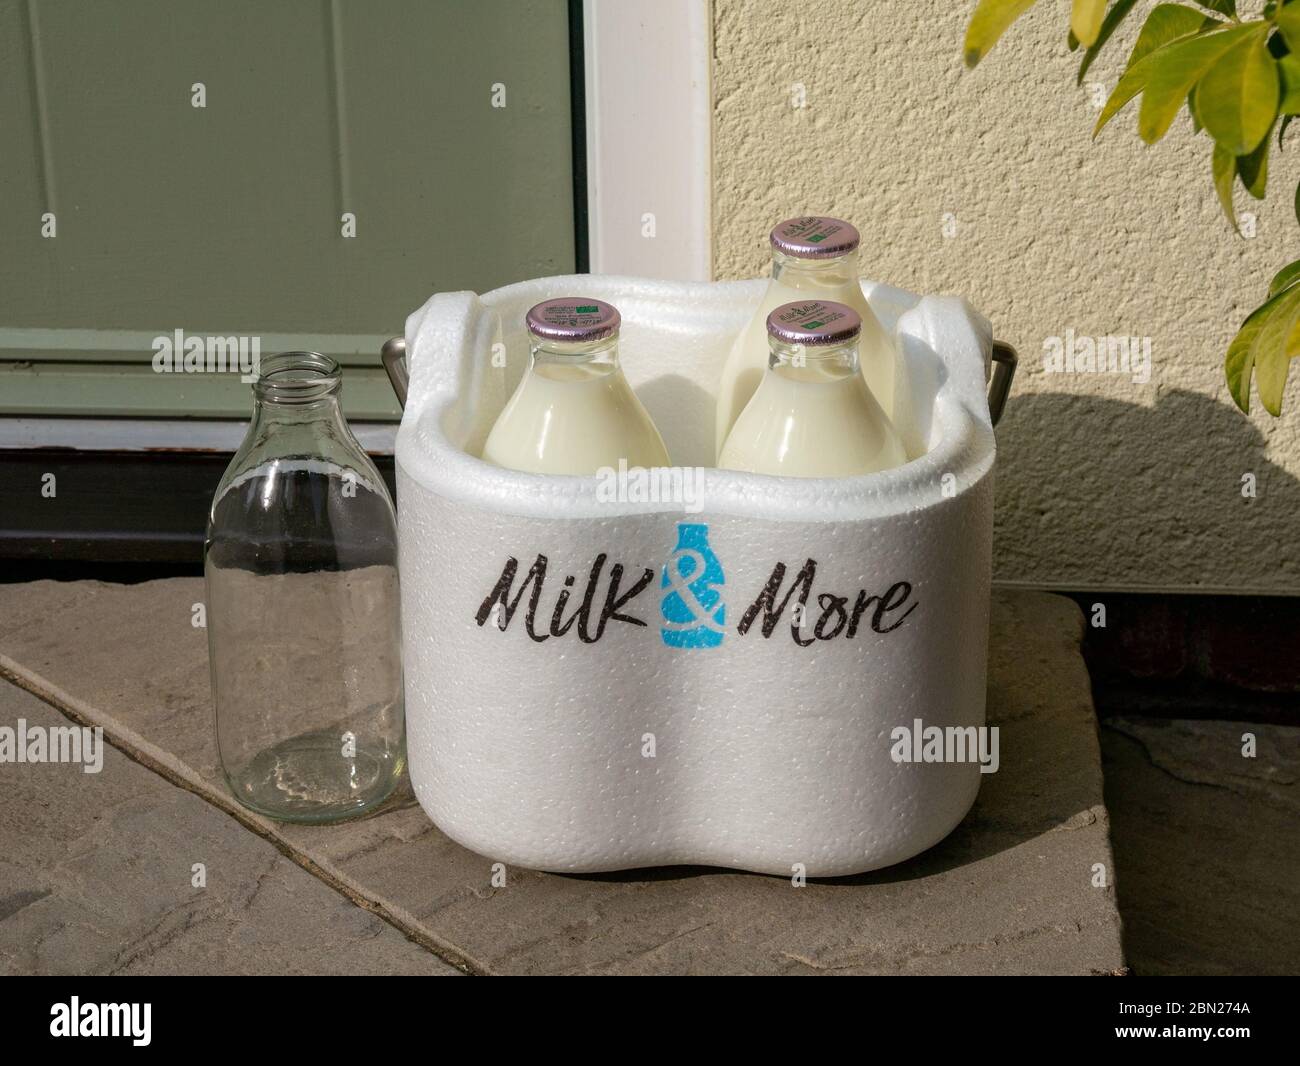 Die Nachfrage nach Milch und mehr Lieferservice nach Hause wächst während der Sperrung des Coronavirus. Bild zeigt Milchflaschen mit Milch & Mehr-Lieferbox vor der Haustür Stockfoto